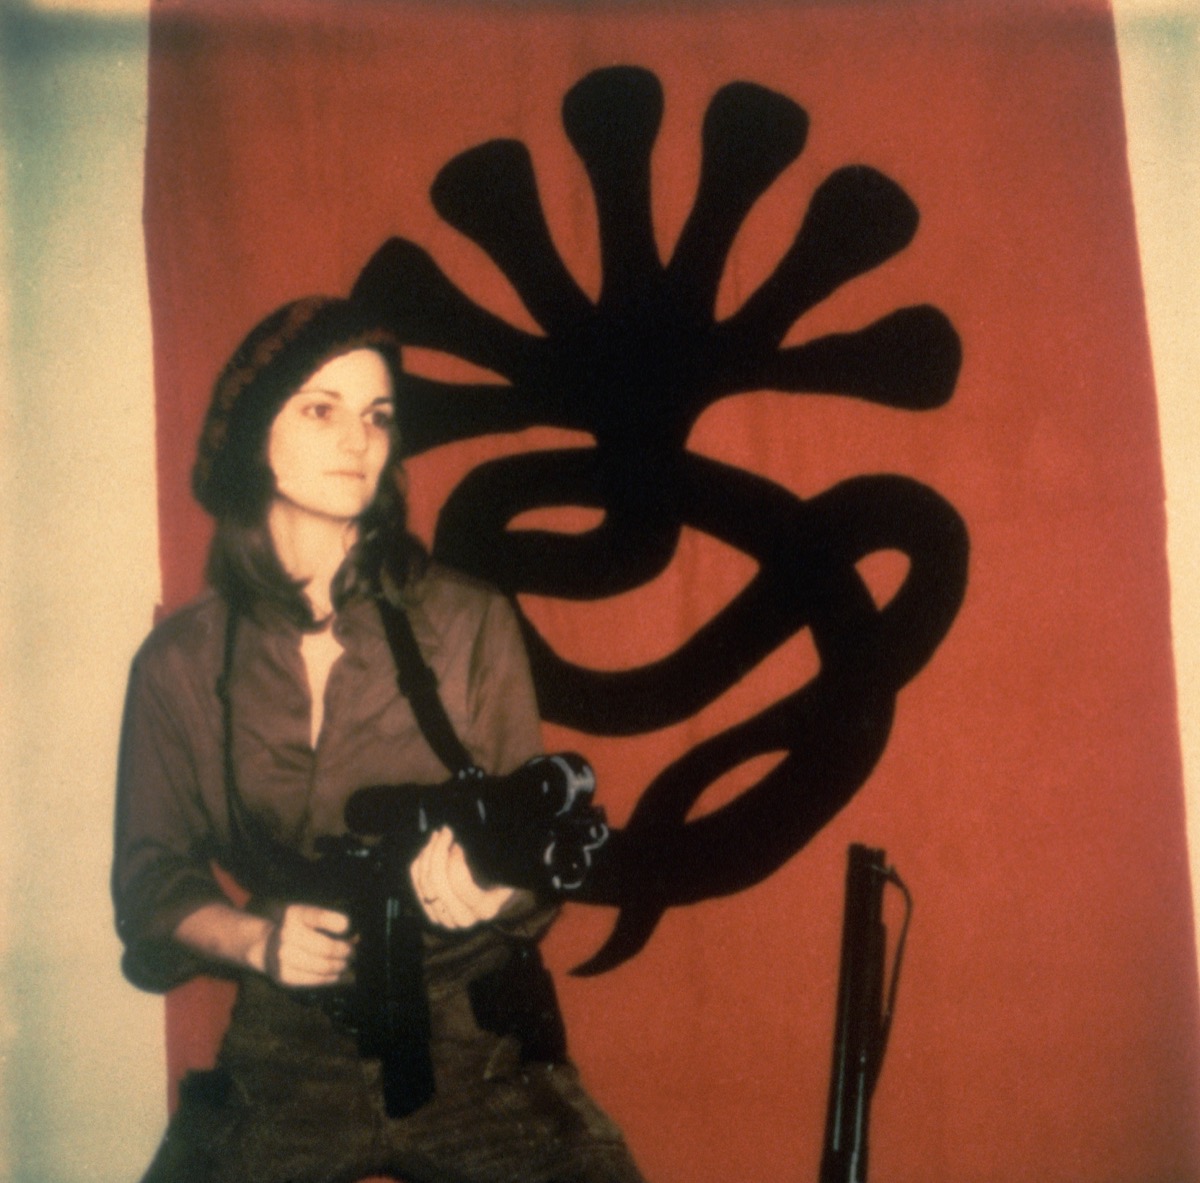 Patty Hearst with machine gun in 1974